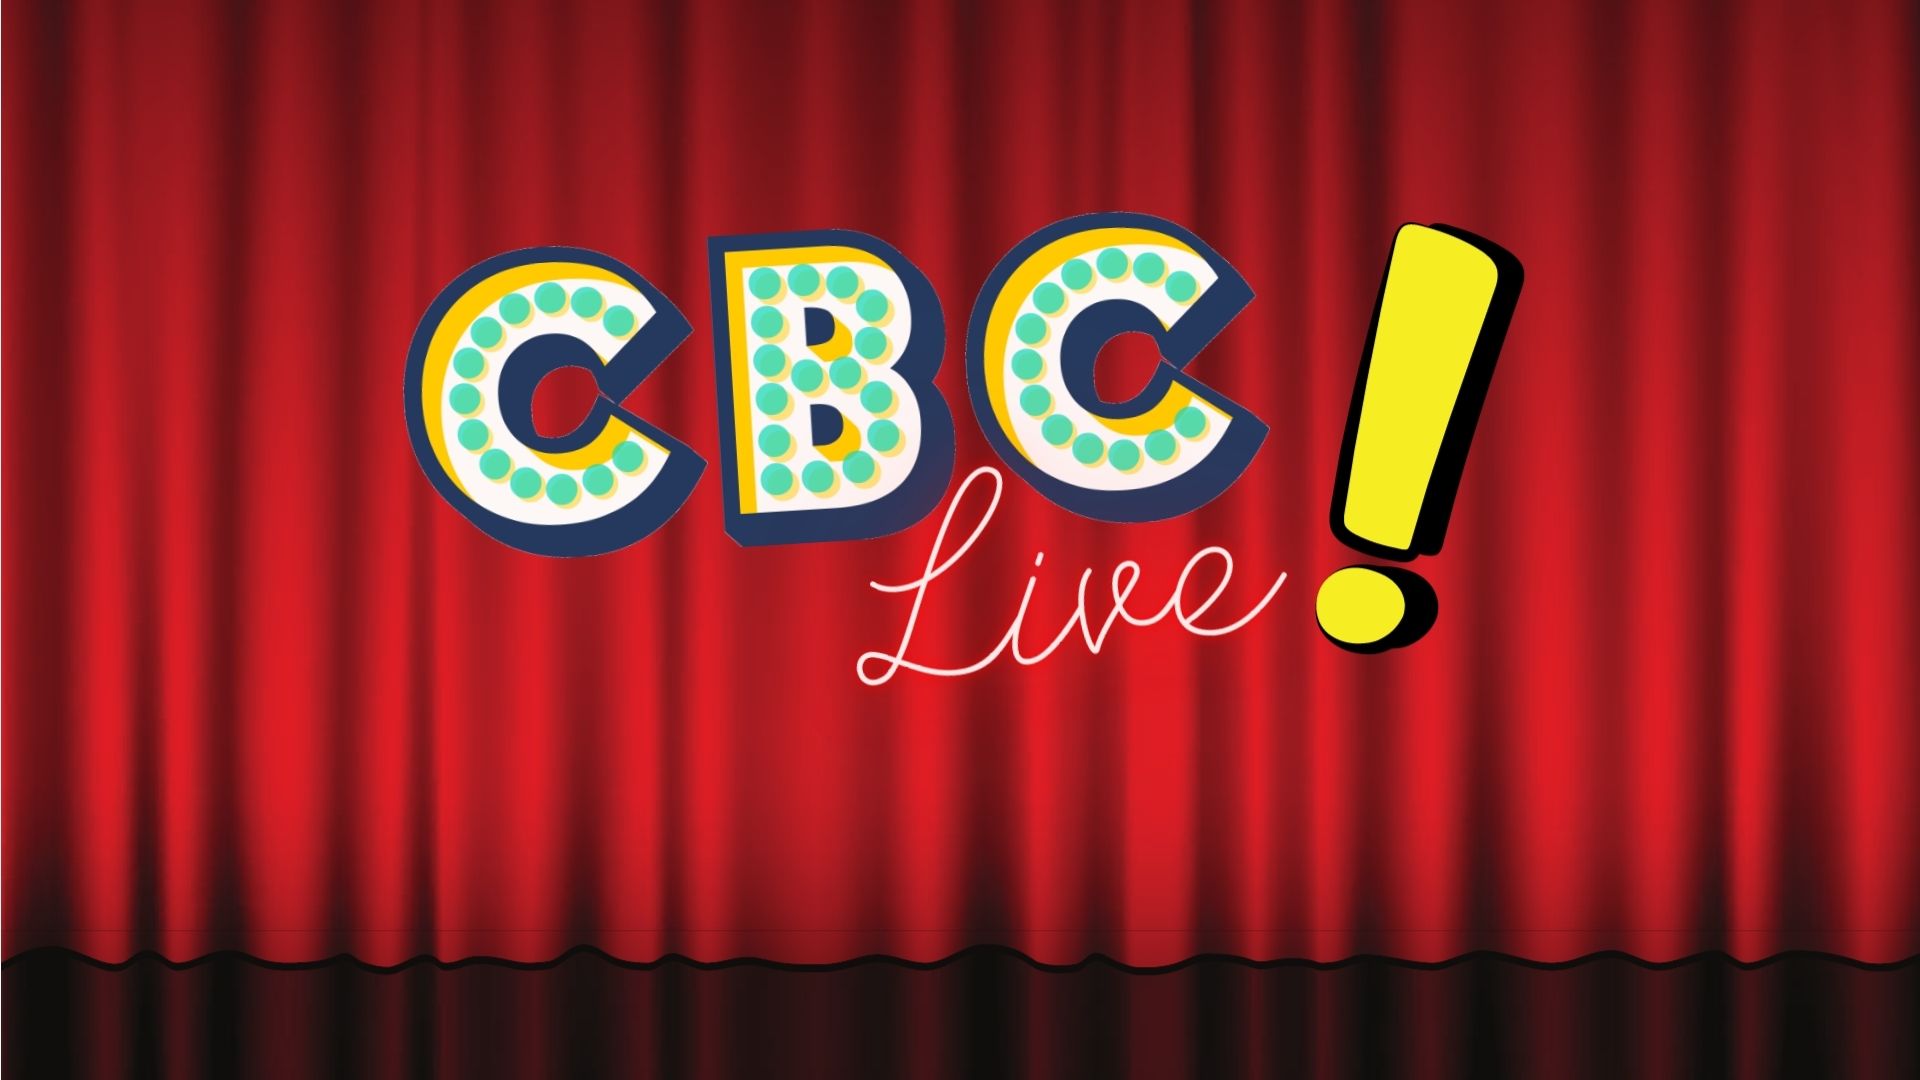 CBC Live!